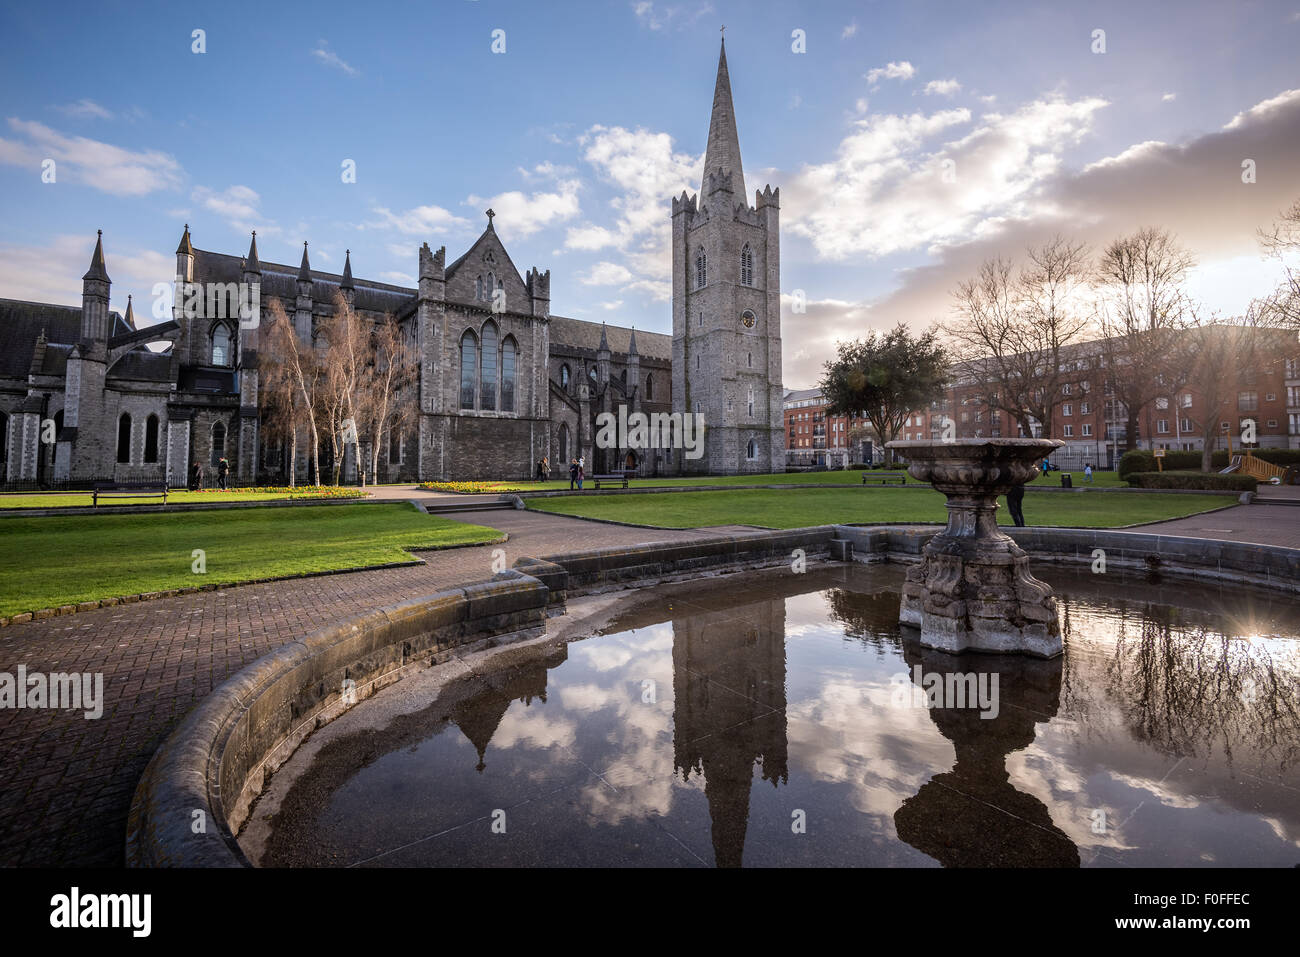 La catedral de St Patrick iglesia es una iglesia nacional de la República de Irlanda situado en la capital, Dublín. Foto de stock